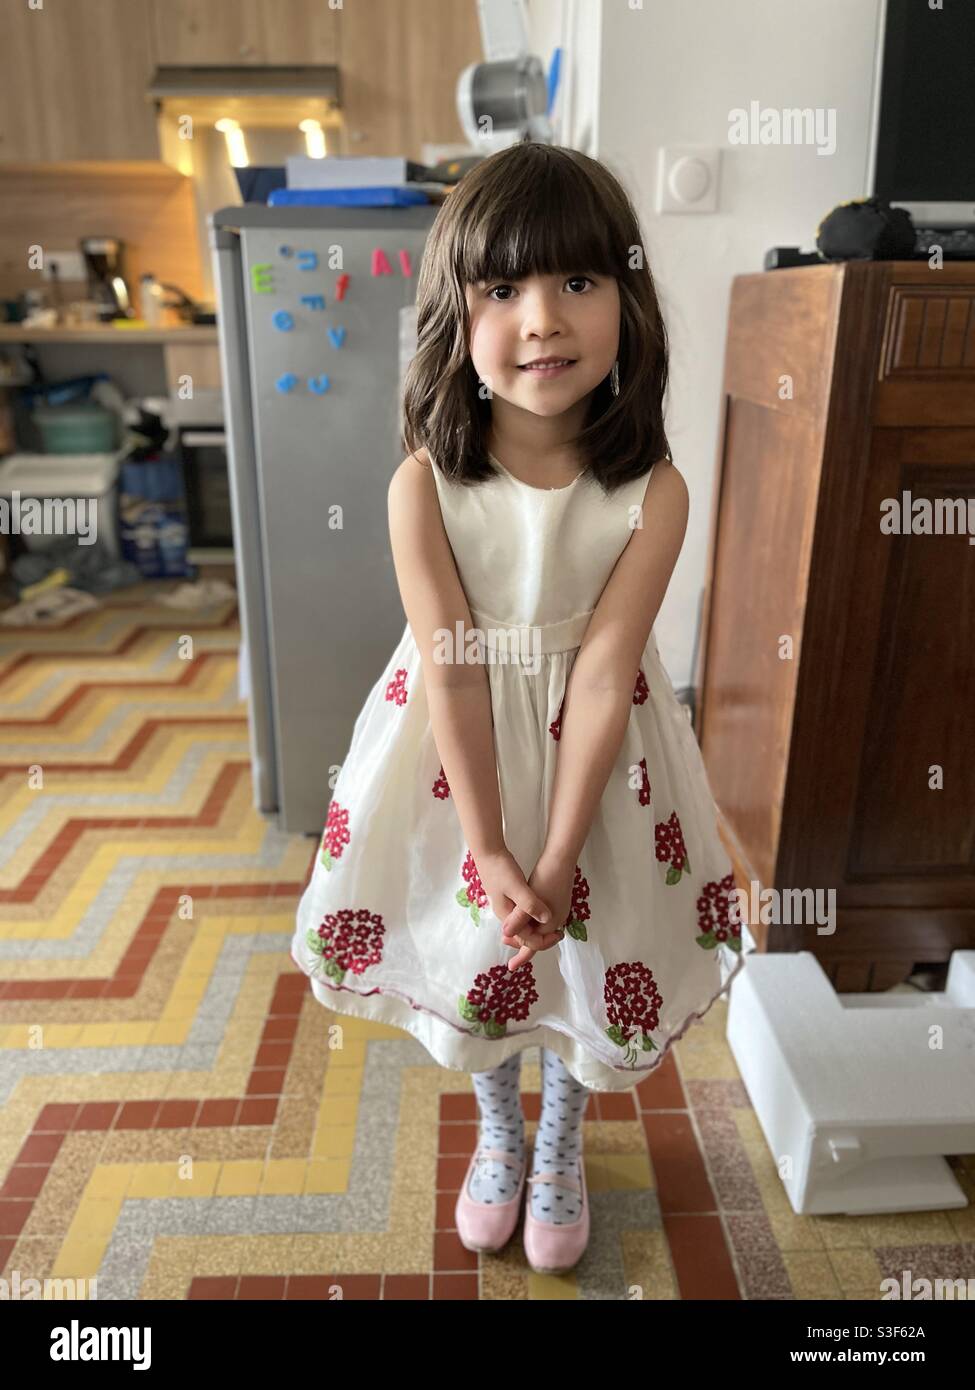 Schöne und nette gemischte asiatische kaukasische kleine Mädchen mit weiß  prinzessin Kleid mit roten Blumen halten die Hände und lächeln  Stockfotografie - Alamy